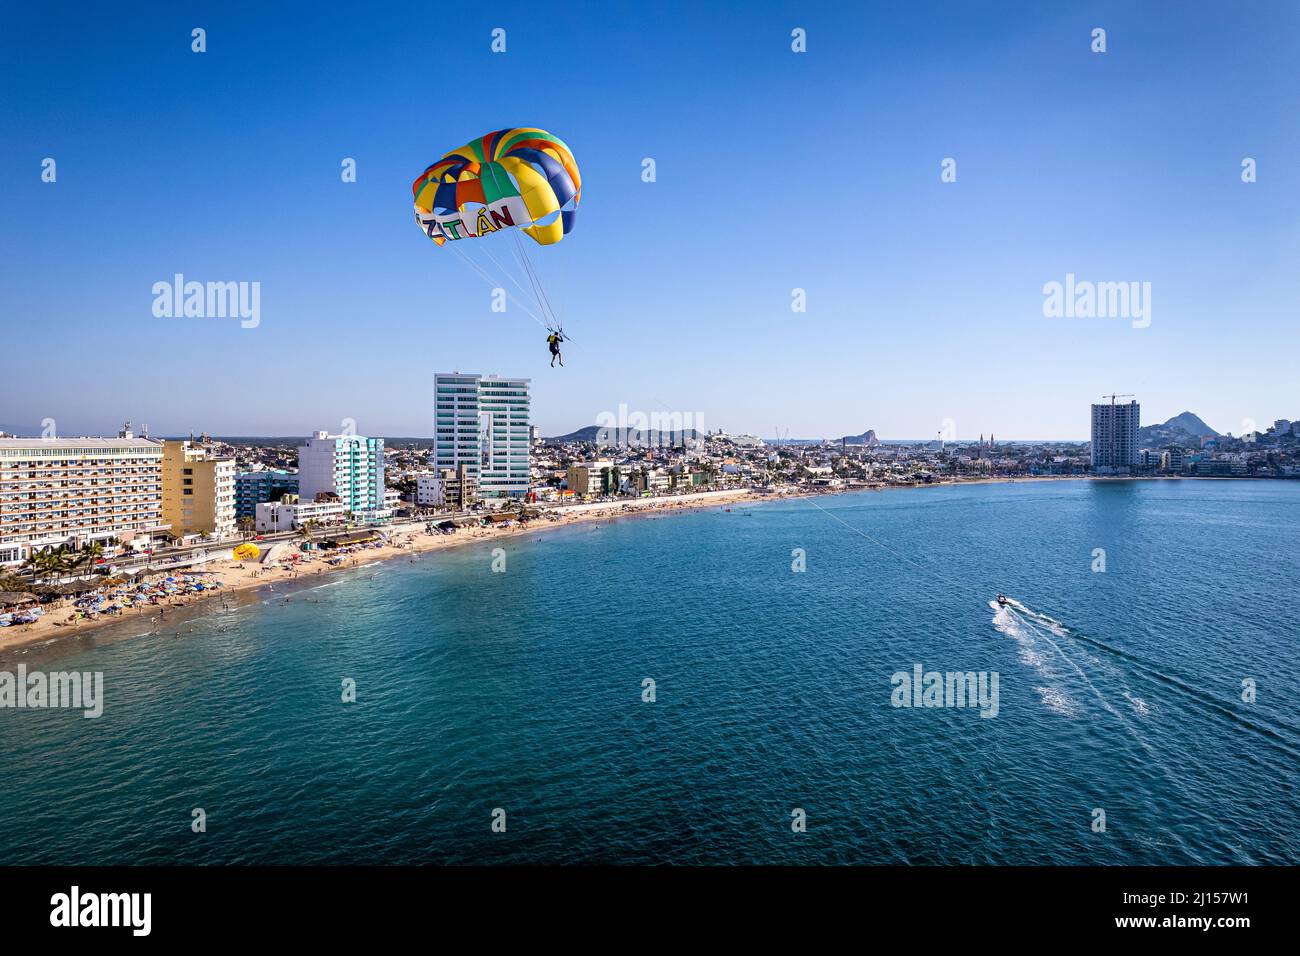 A parasailer glides over the ocean near the beach and malecon of Mazatlan, Sinaloa, Mexico. Stock Photo